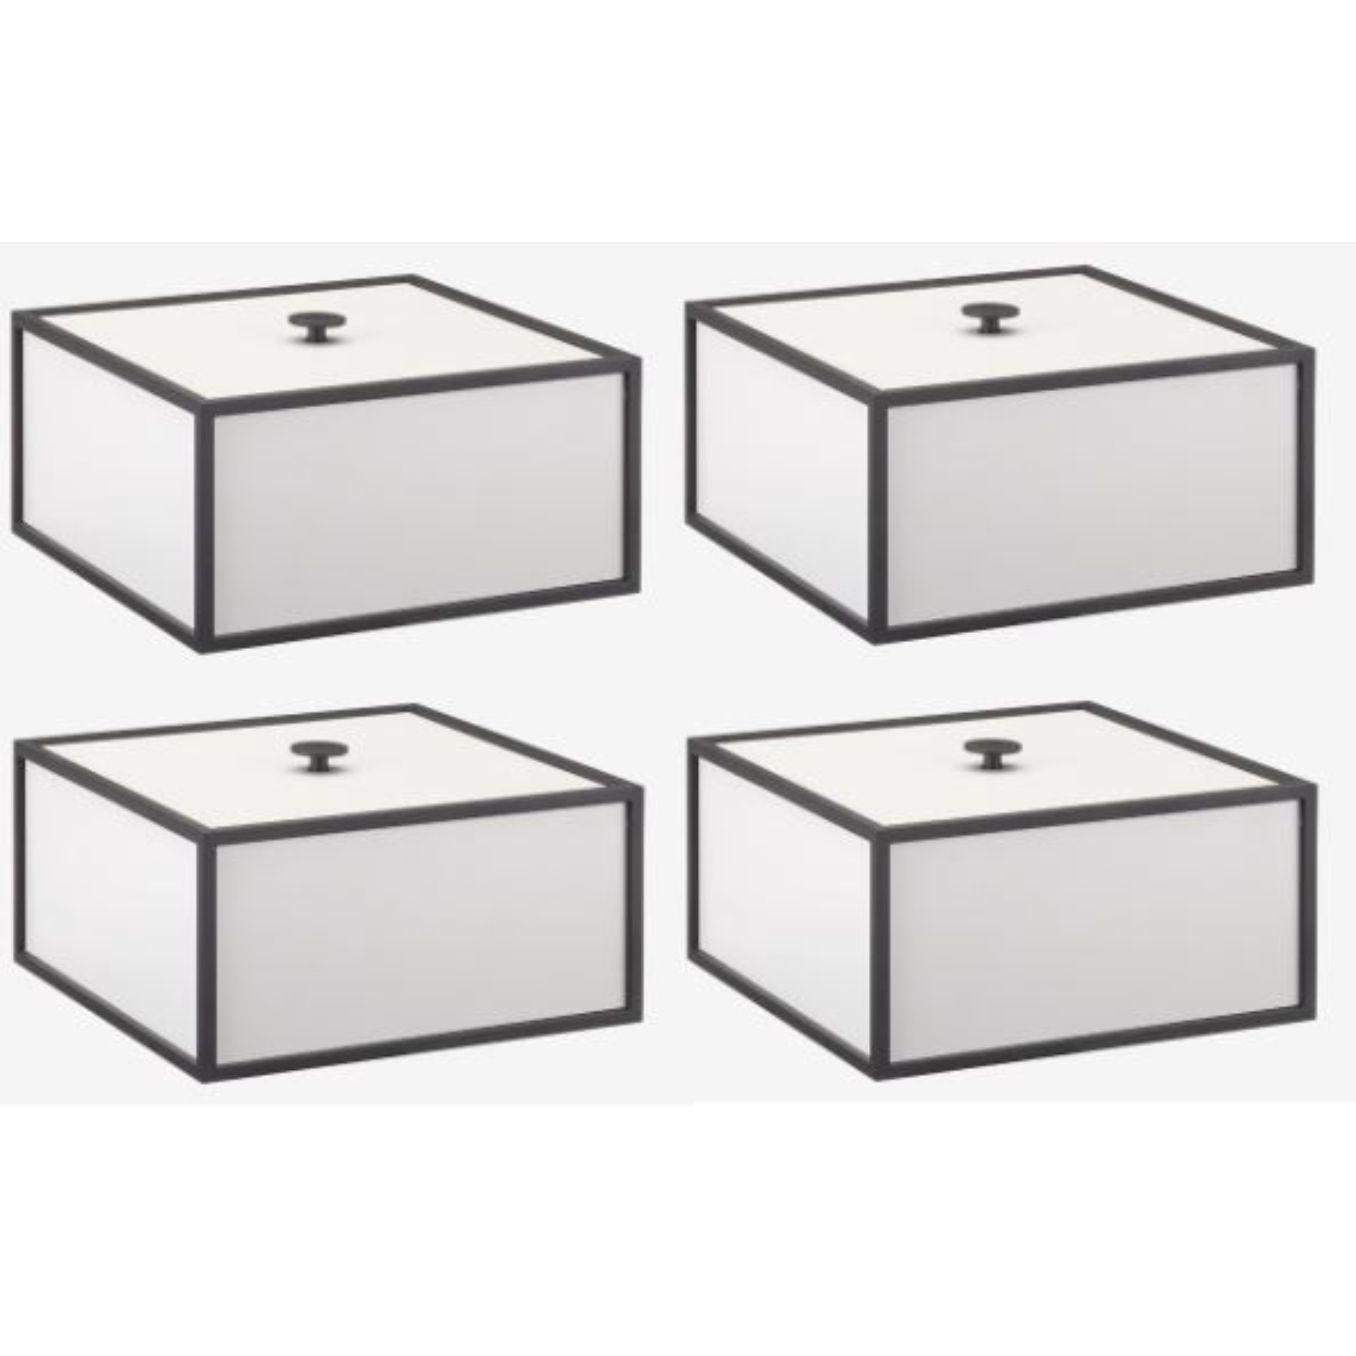 4er set hellgrauer rahmen 20 box von Lassen
Abmessungen: D 20 x B 20 x H 10 cm 
MATERIALIEN: Melamin, Melamin, Metall, Furnier
Gewicht: 2.00 kg

Frame Box ist eine quadratische Box in kubistischer Form. Die schlichten Kästen sind von den